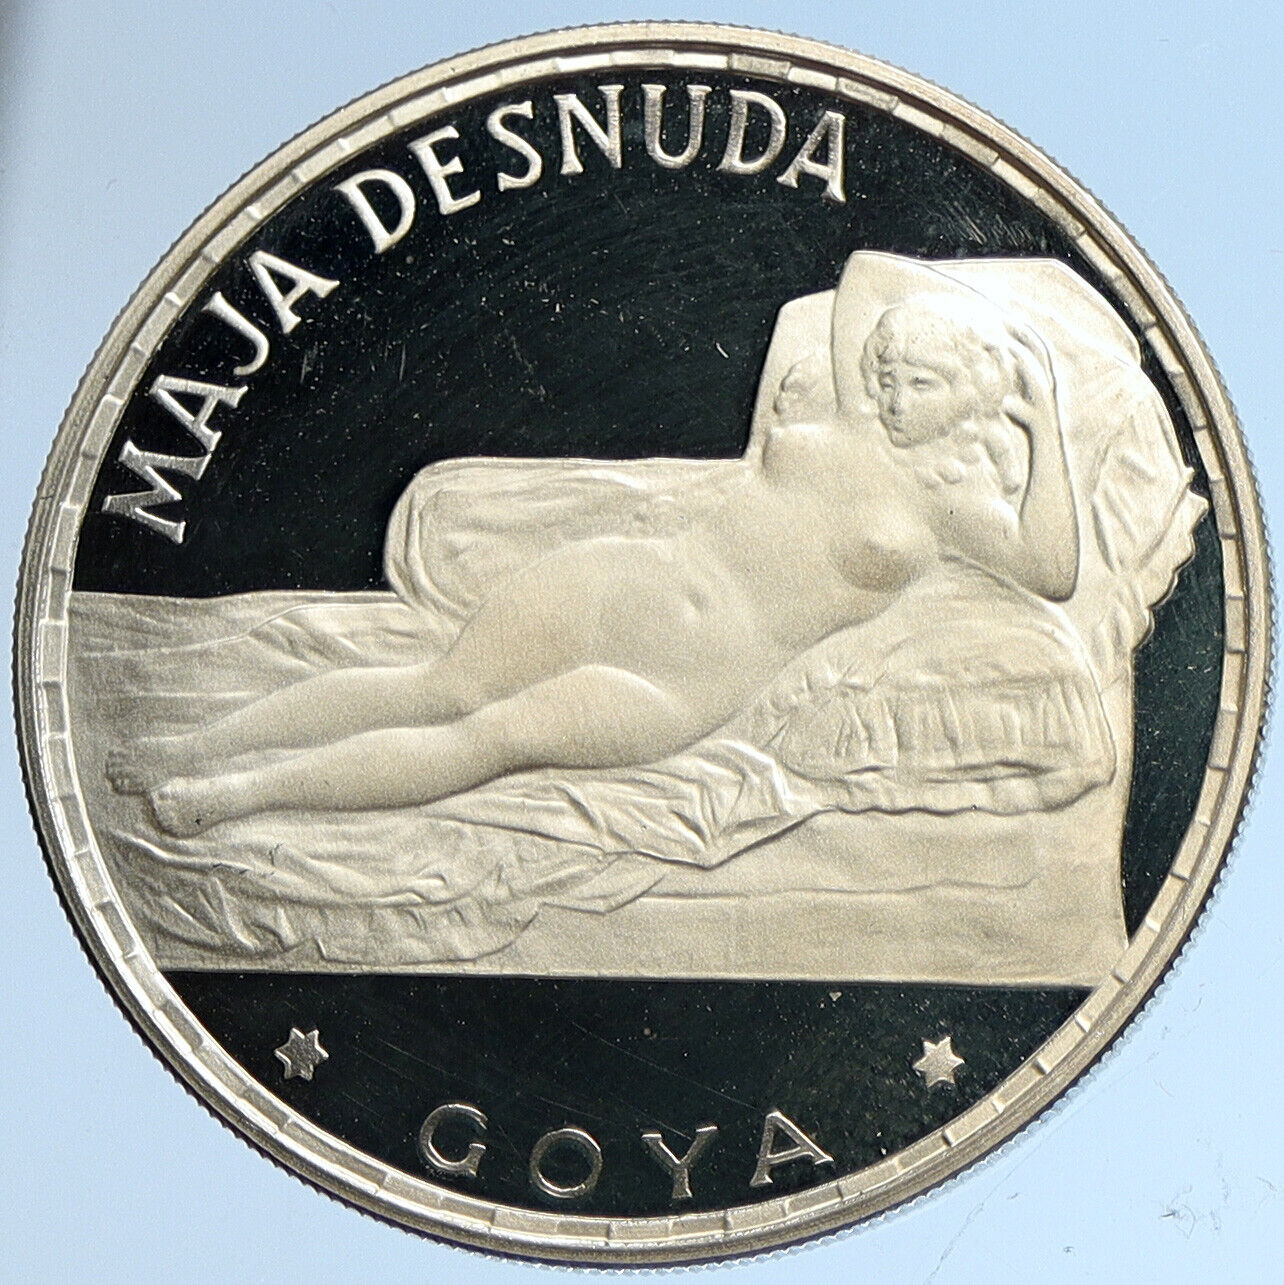 1970 EQUATORIAL GUINEA Goya Maja Desnuda Proof Silver 100 Pesetas Coin i113211